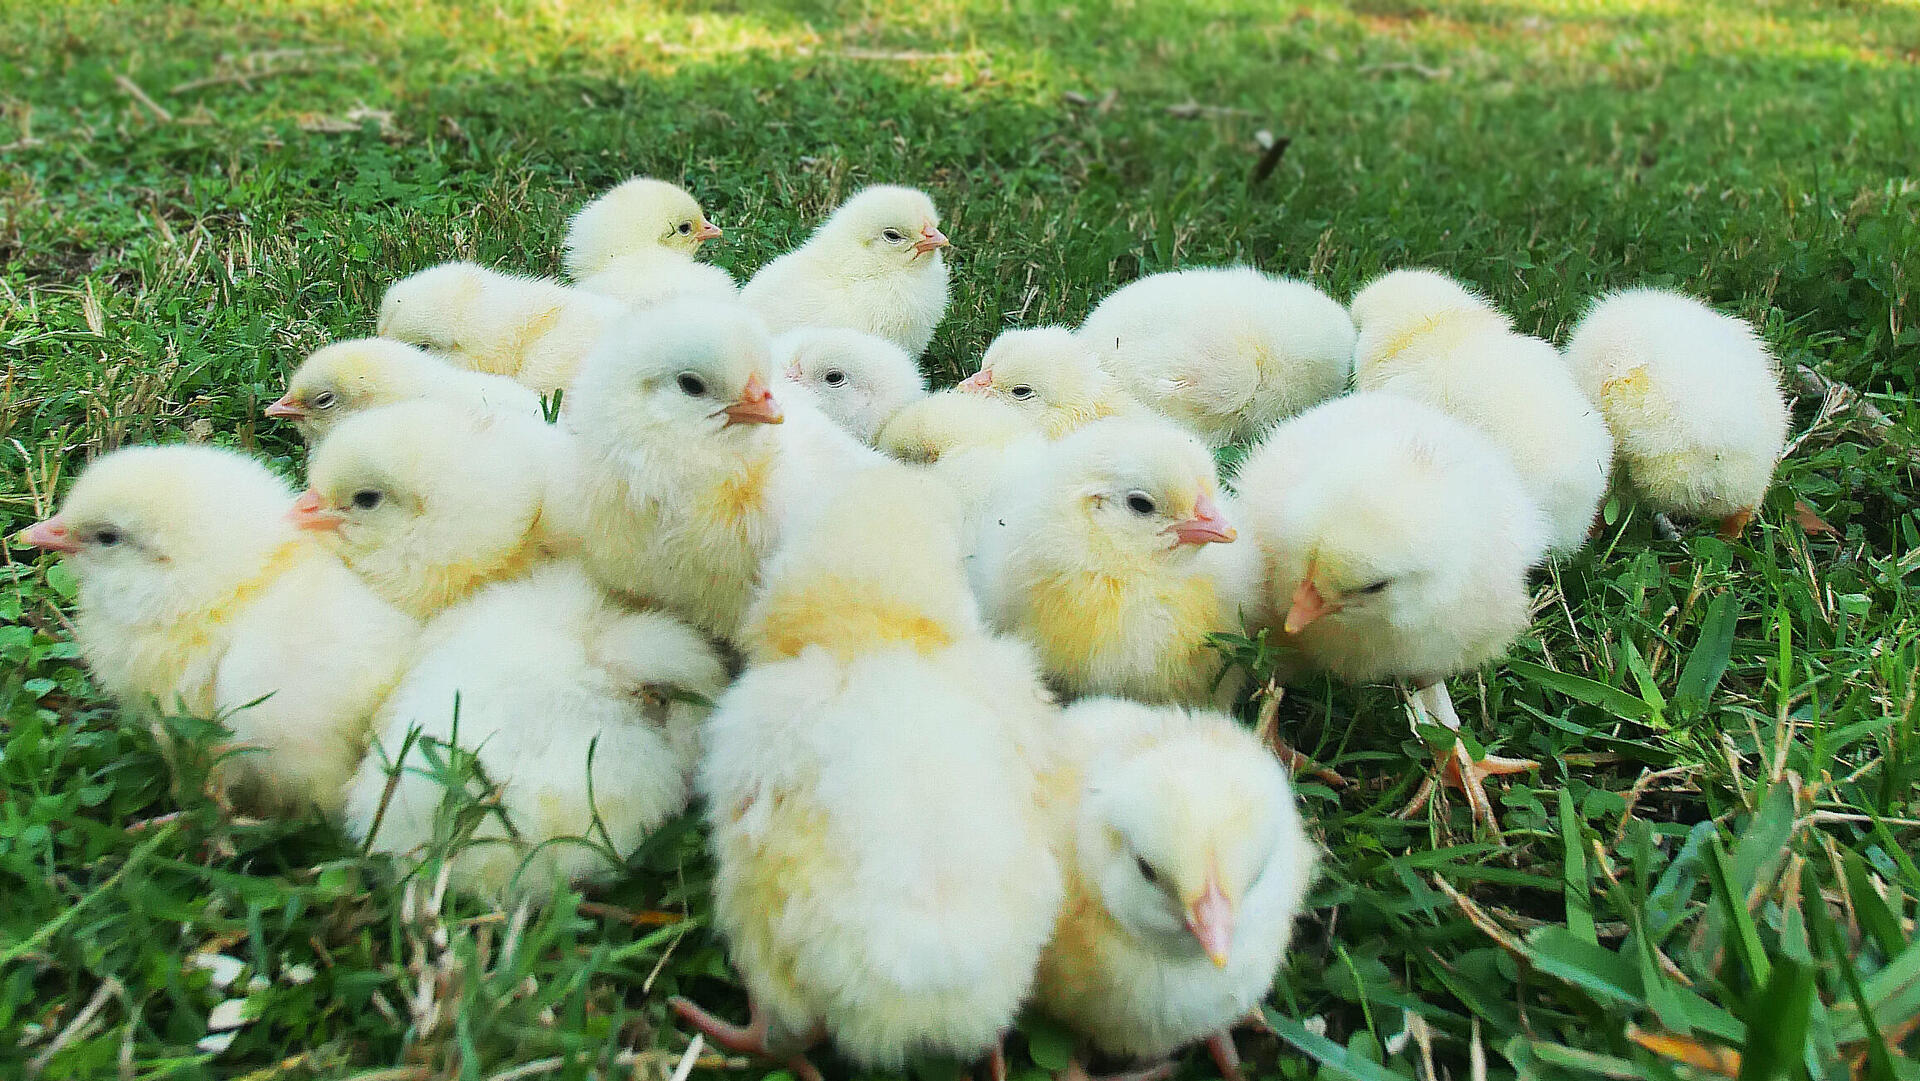 אפרוחות שנולדו בעזרת הטכנולוגיה של Poultry by Huminn